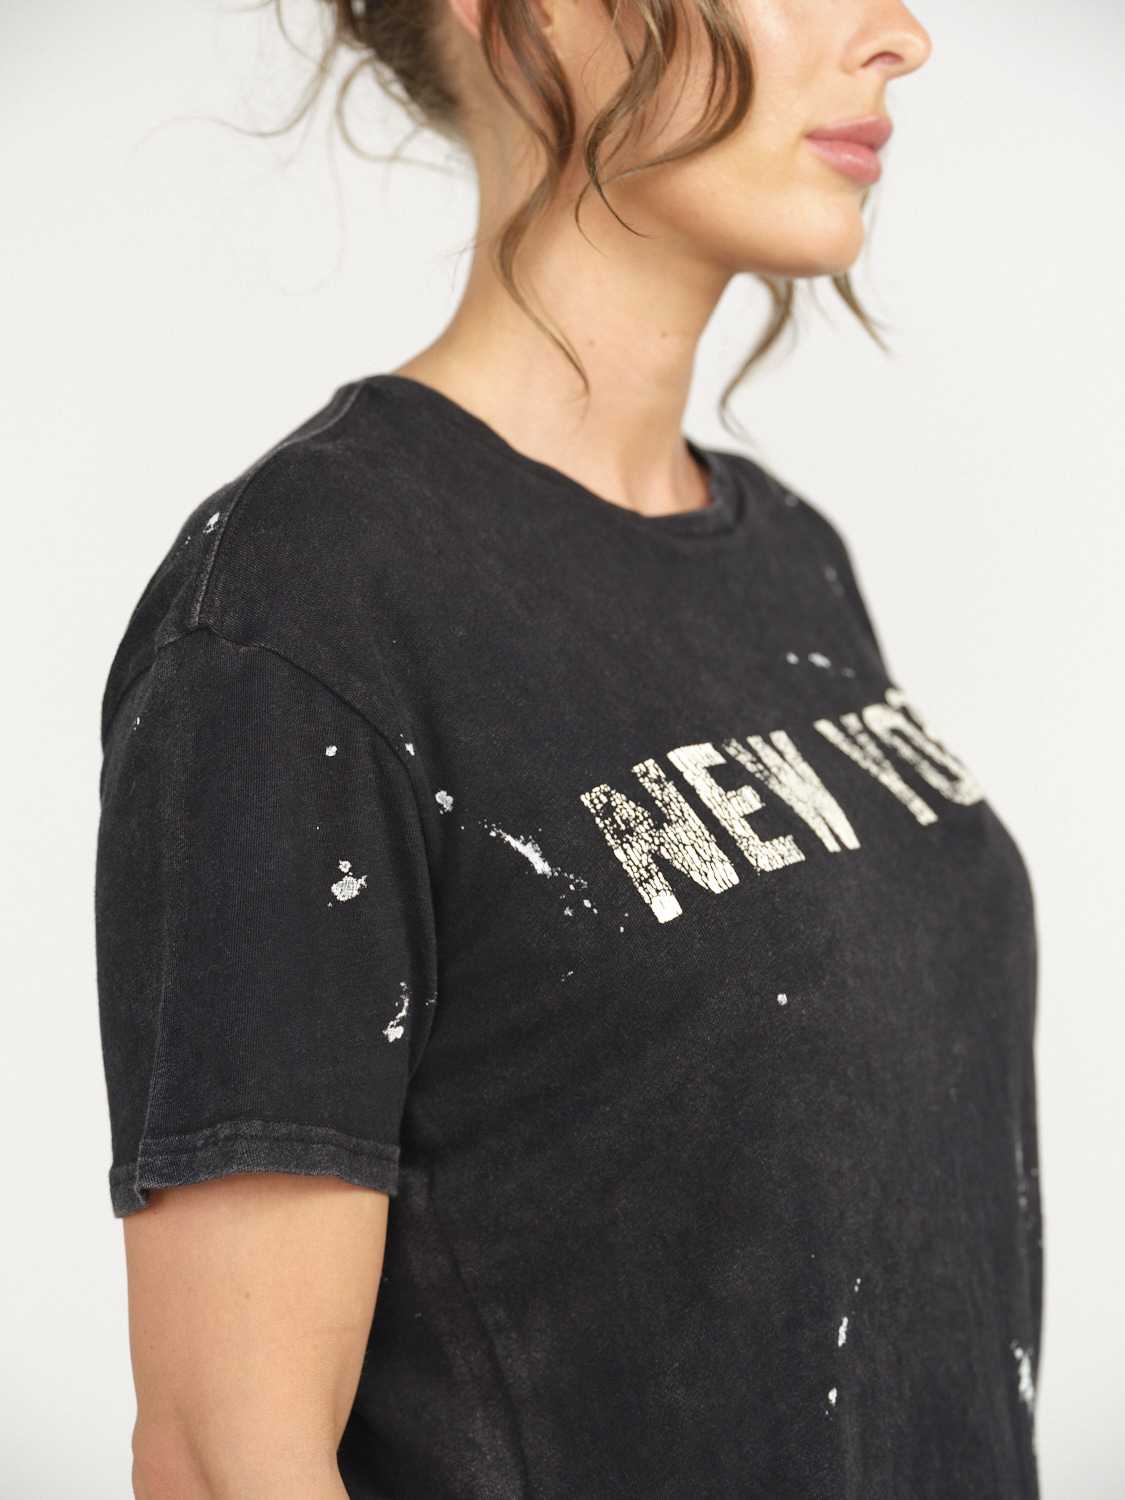 R13 New York Boy T-Shirt  - Splatter Shirt aus Baumwolle  schwarz M